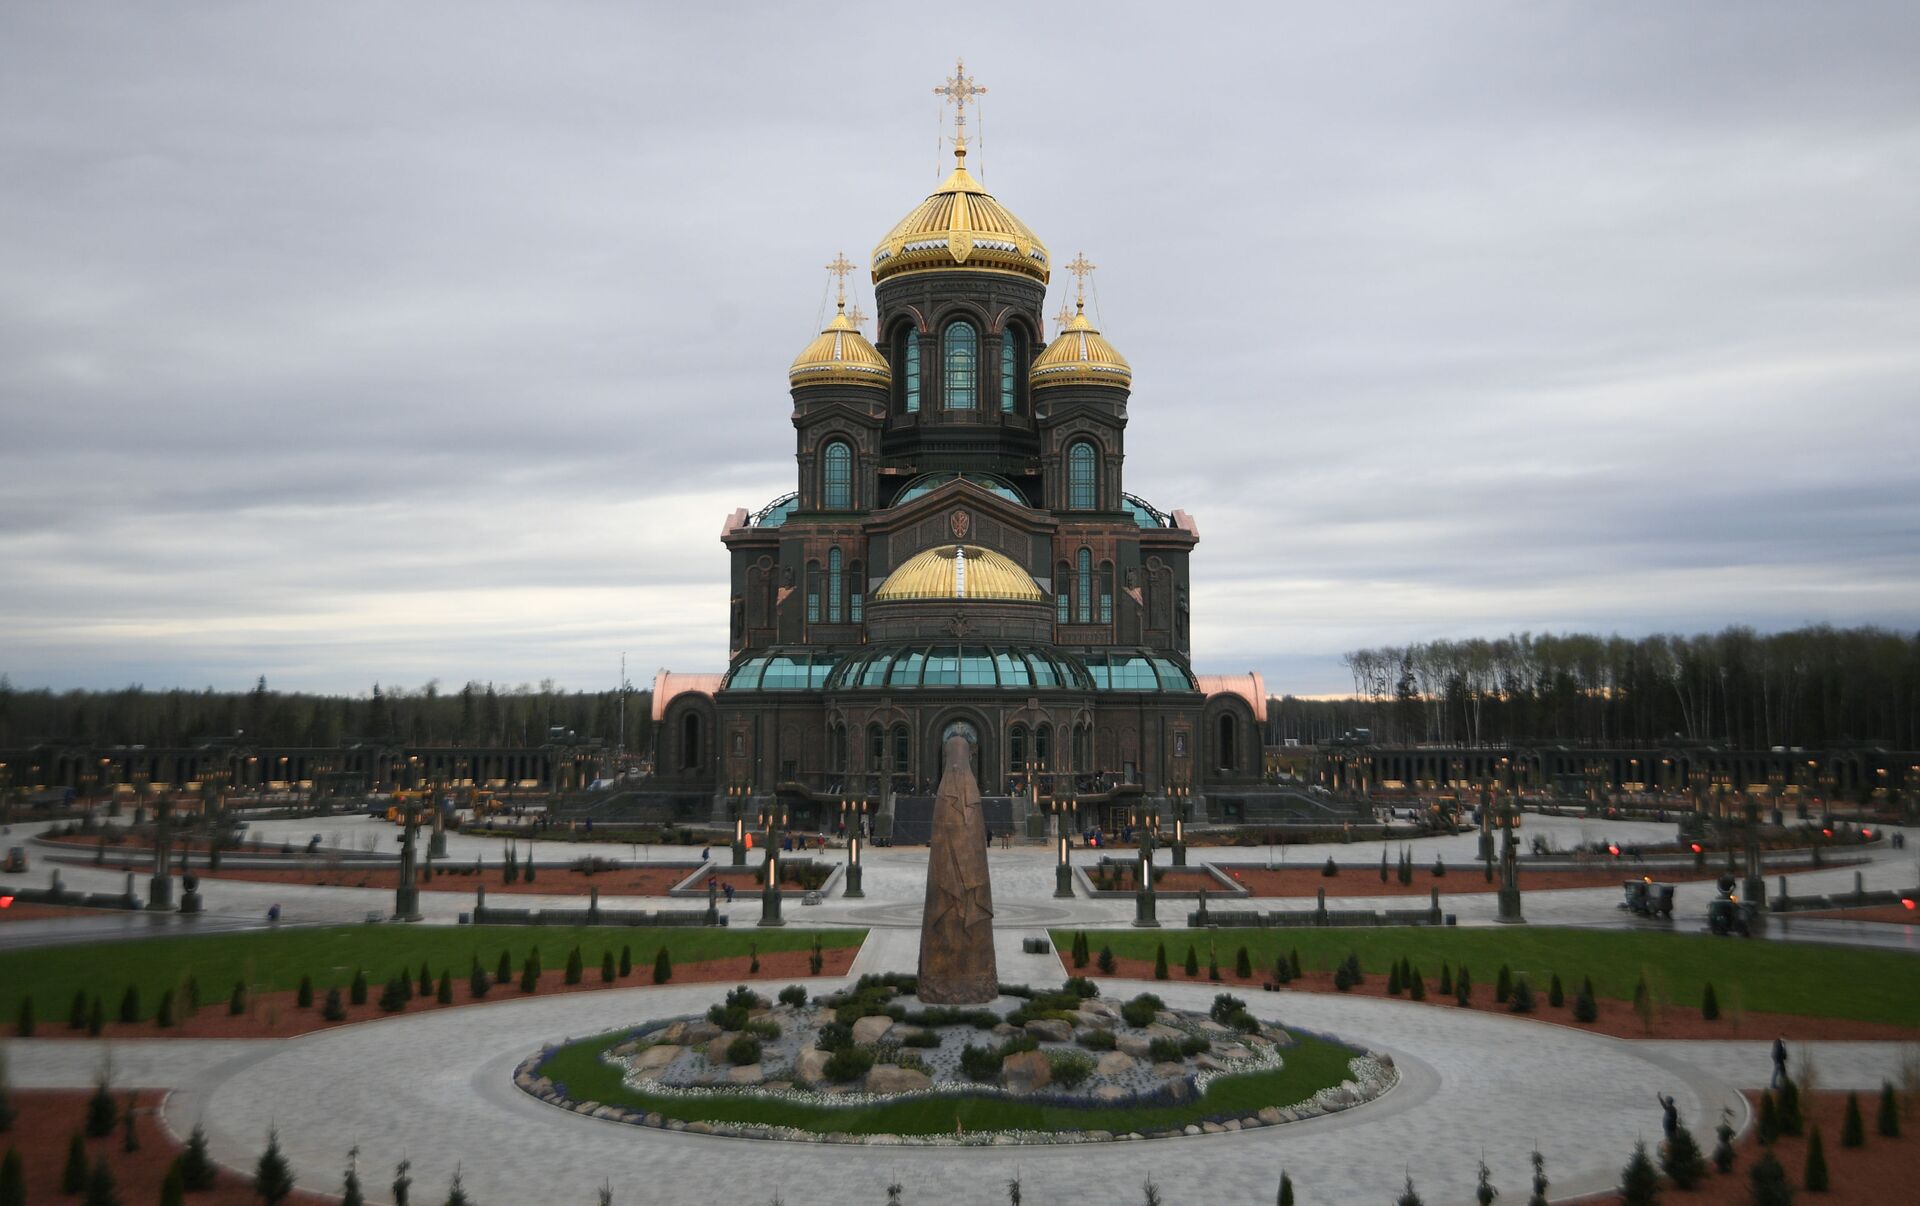 Храм вс РФ В парке Патриот